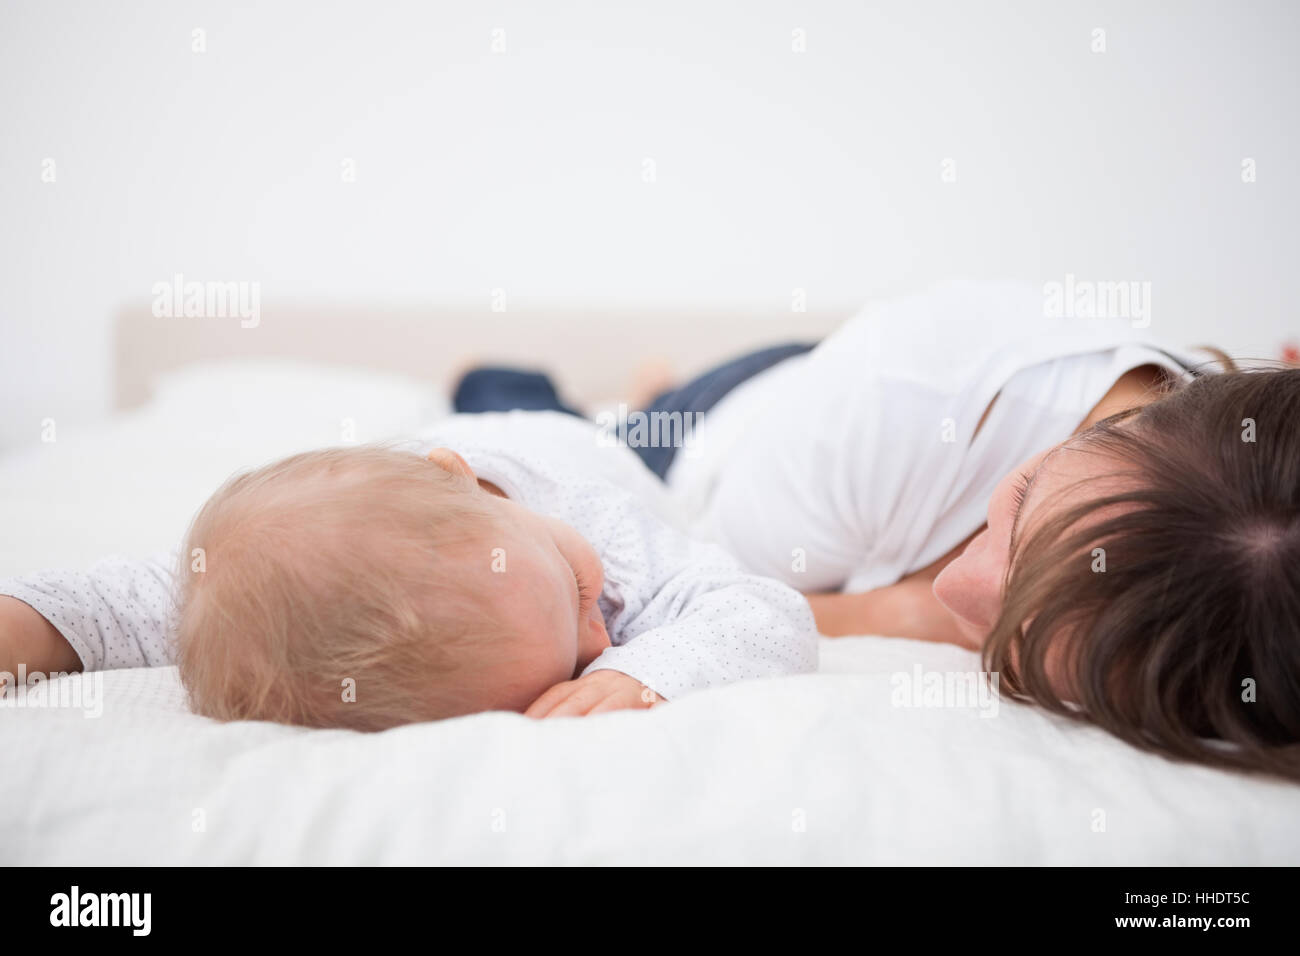 Мамаши лежа. Мама лежит с малышом. Мама с младенцем лежат на кровати. Ребенок лежит на маме. Девушка лежит с малышом.